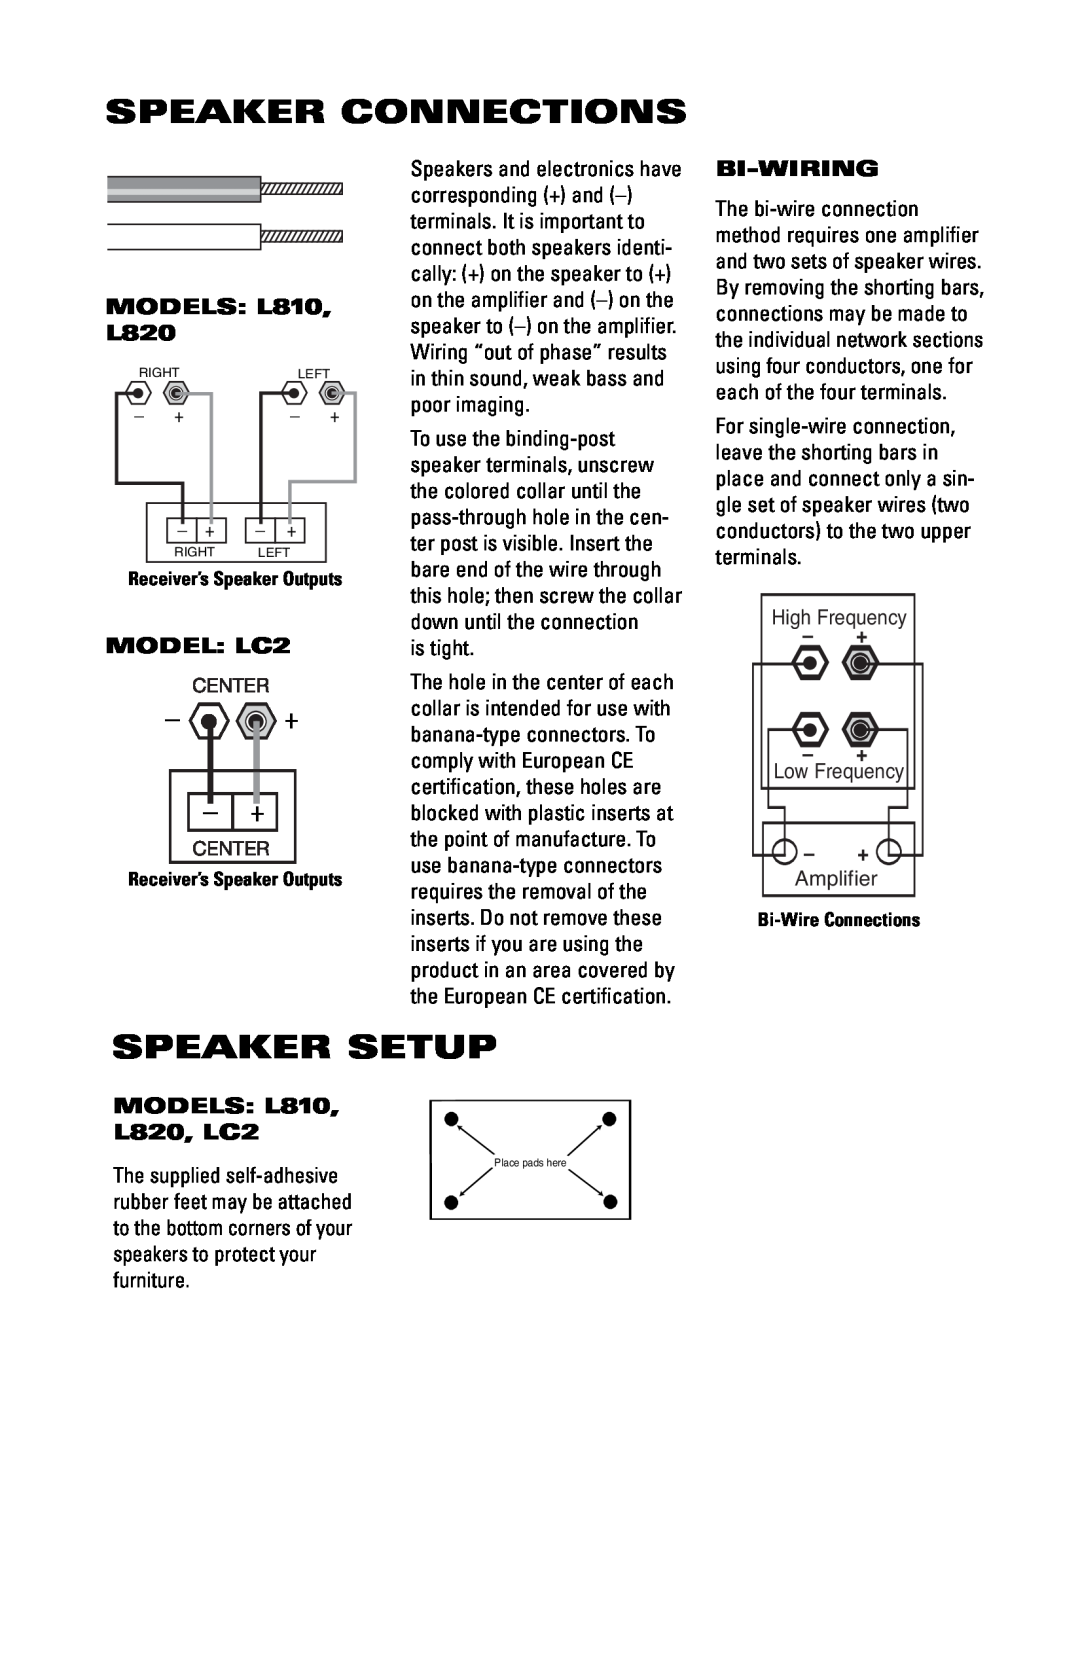 JBL Speaker Connections, Speaker Setup, MODELS L810, L820, Bi-Wiring, MODELS L810 L820, LC2, + -+, MODEL LC2, Amplifier 